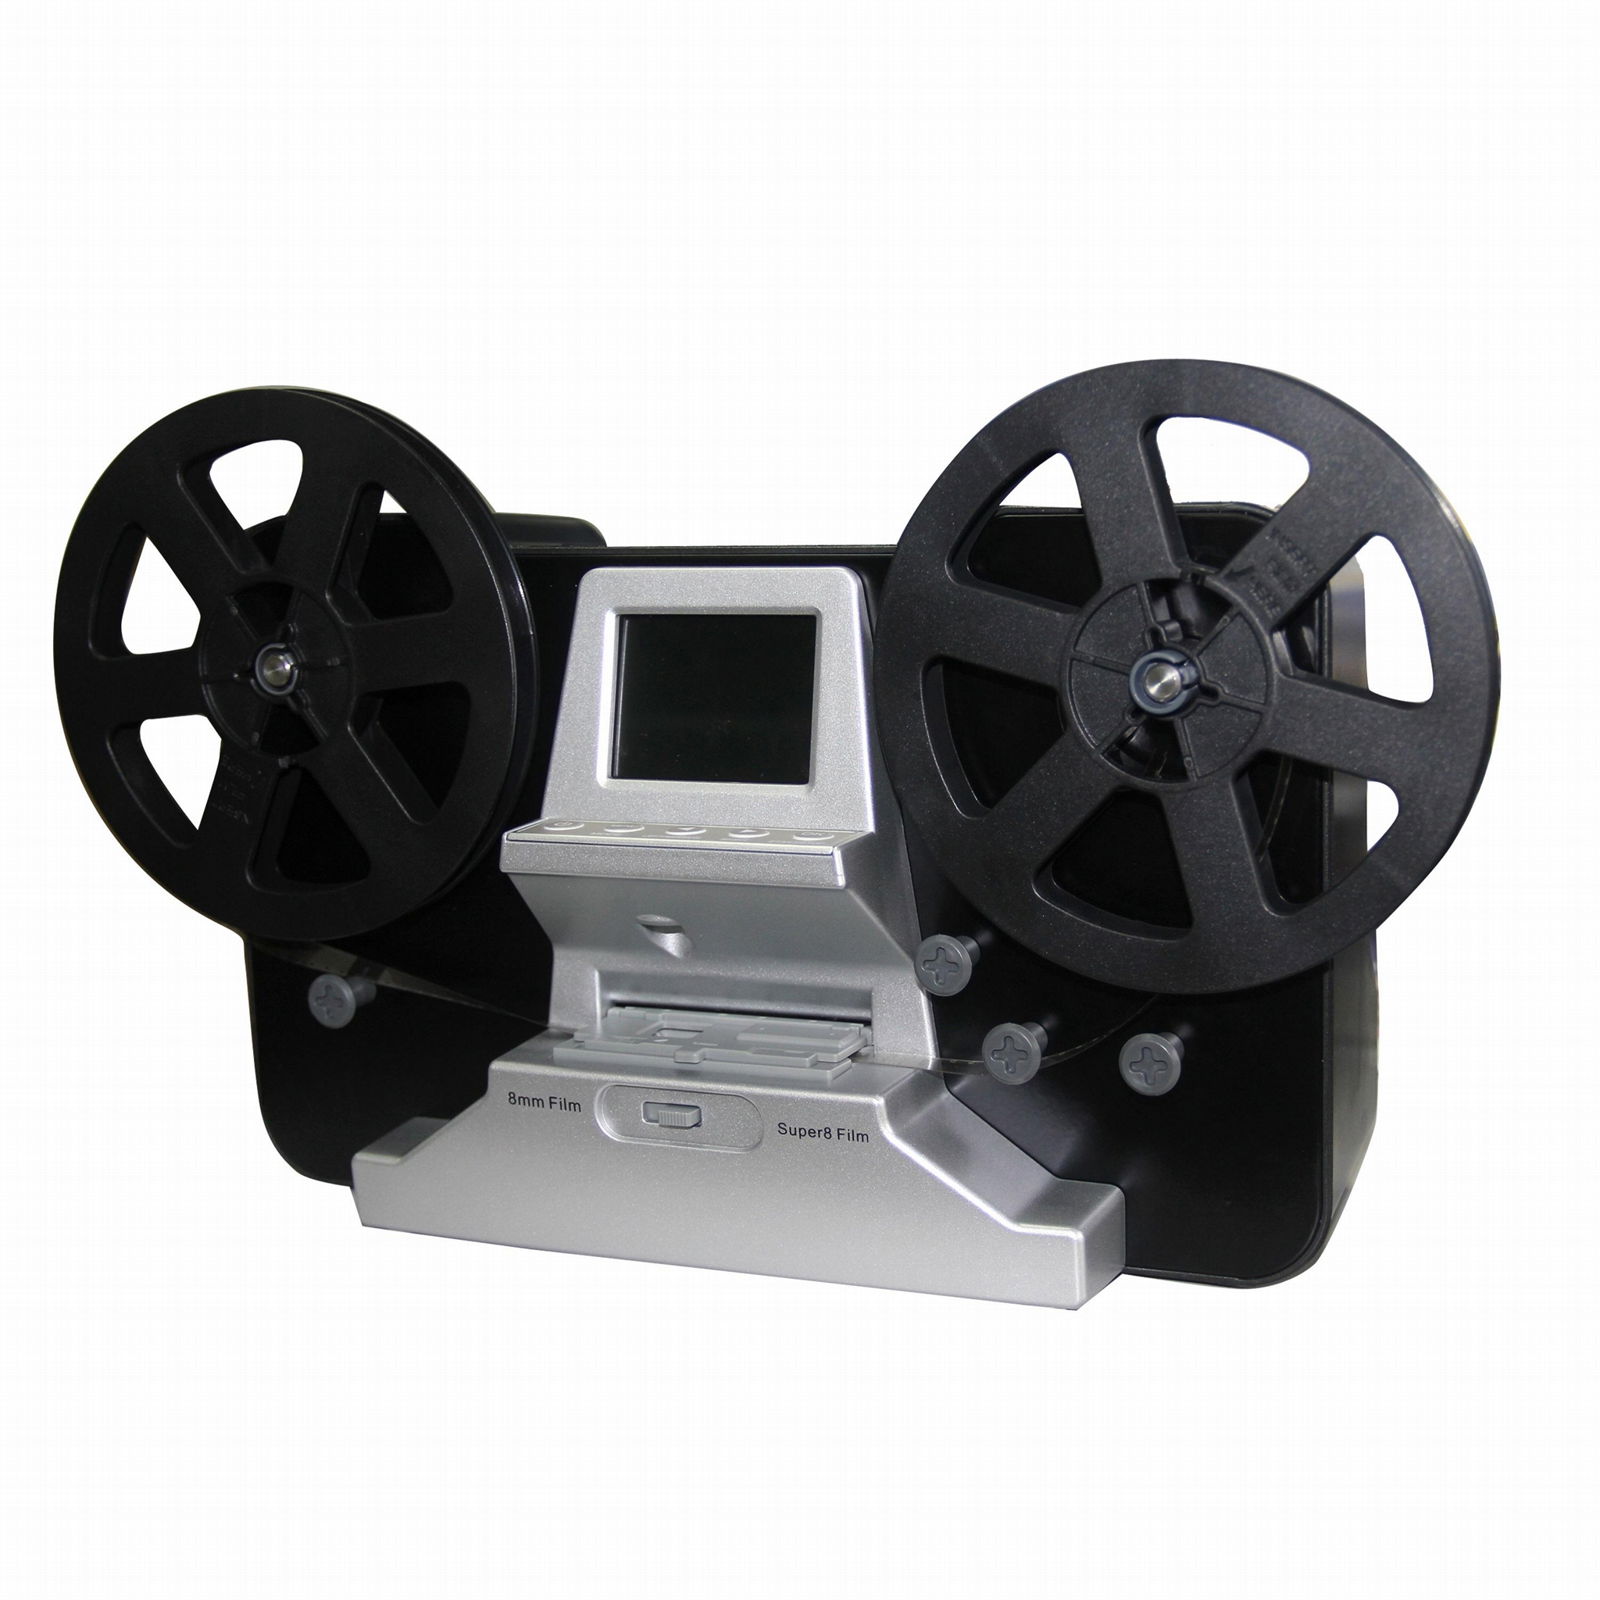 super 8 and 8mm roll film scanner , digital film converter for 7